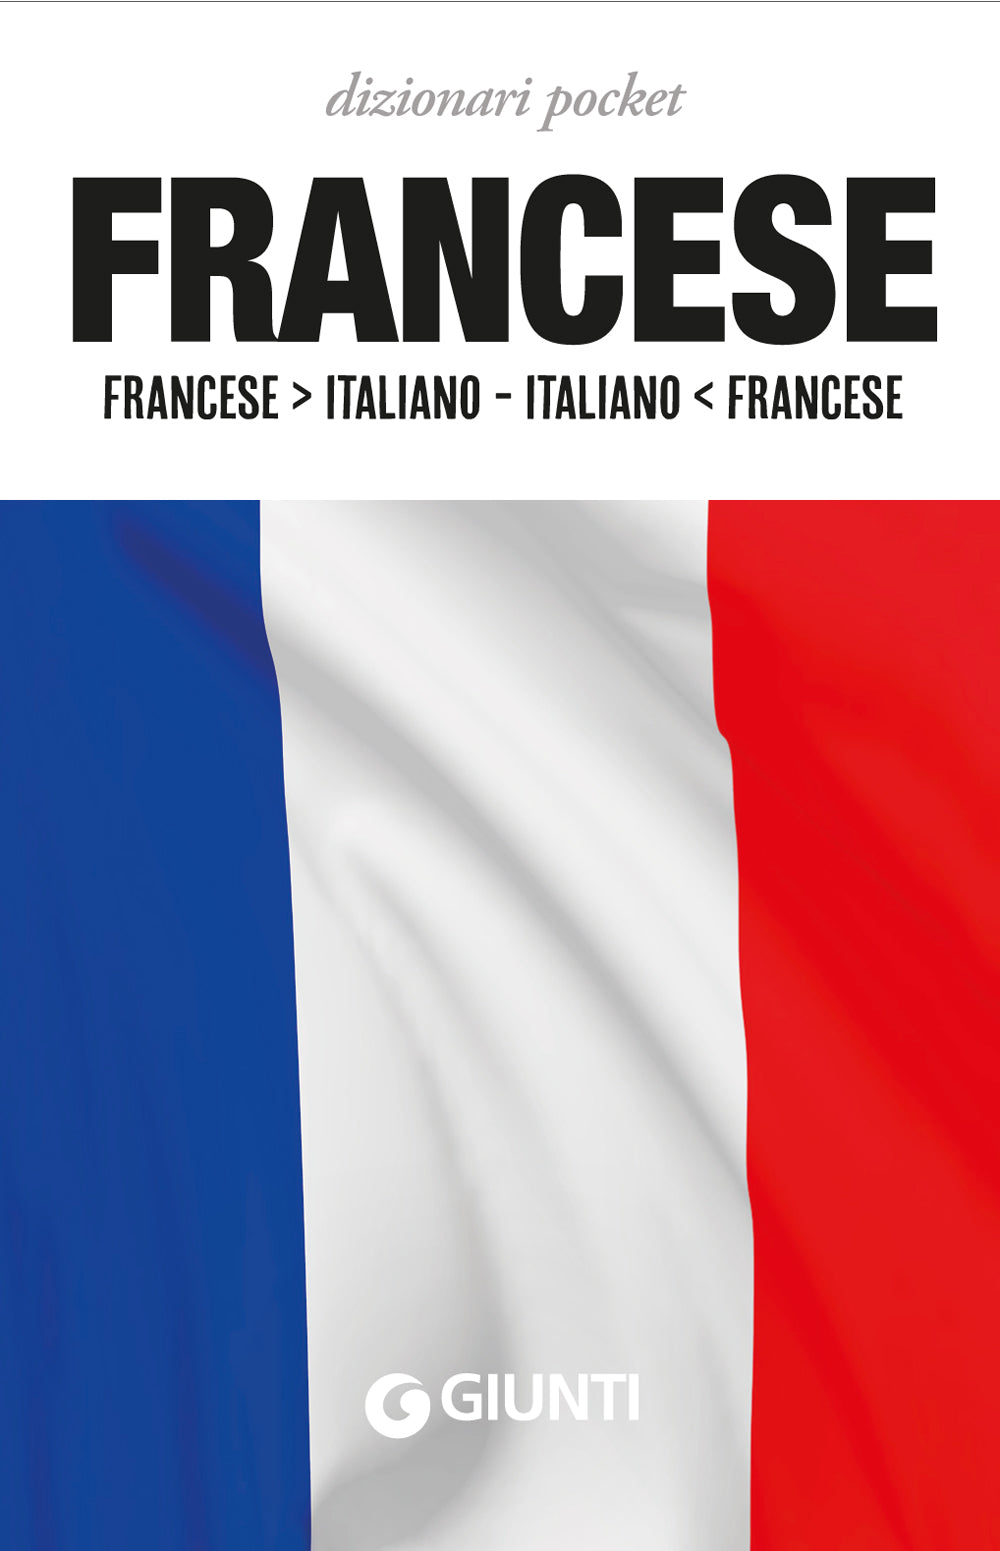 Francese compatto. Dizionario francese-italiano, italiano-francese -  9788808721334 in Dizionari bilingui e multilingui